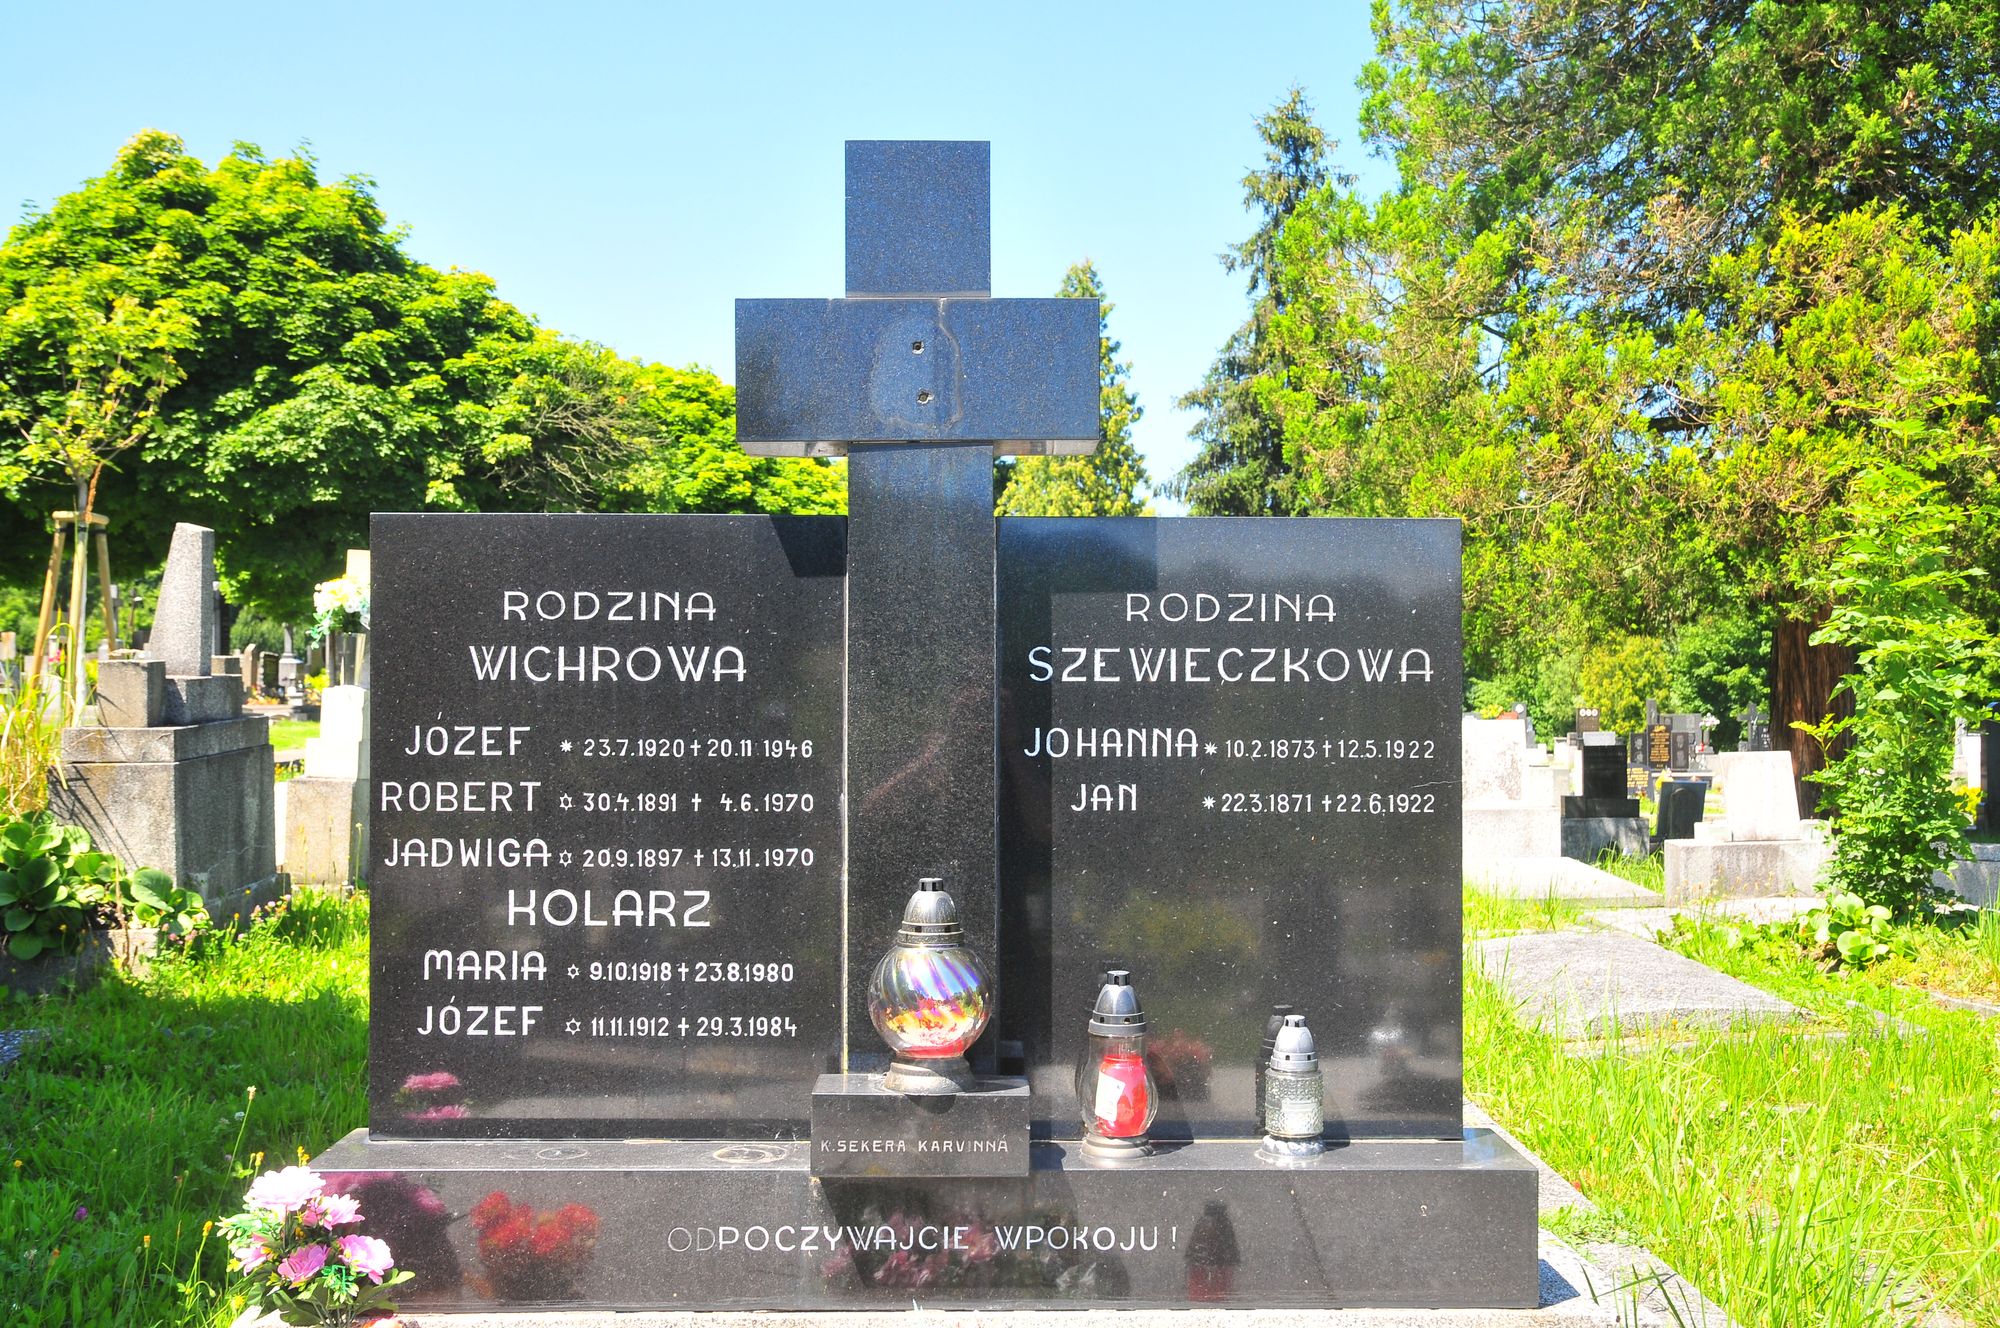 Tombstone of the Wichrowa family, Josef and Maria Kolarz, Jan and Johanna Szewieczek